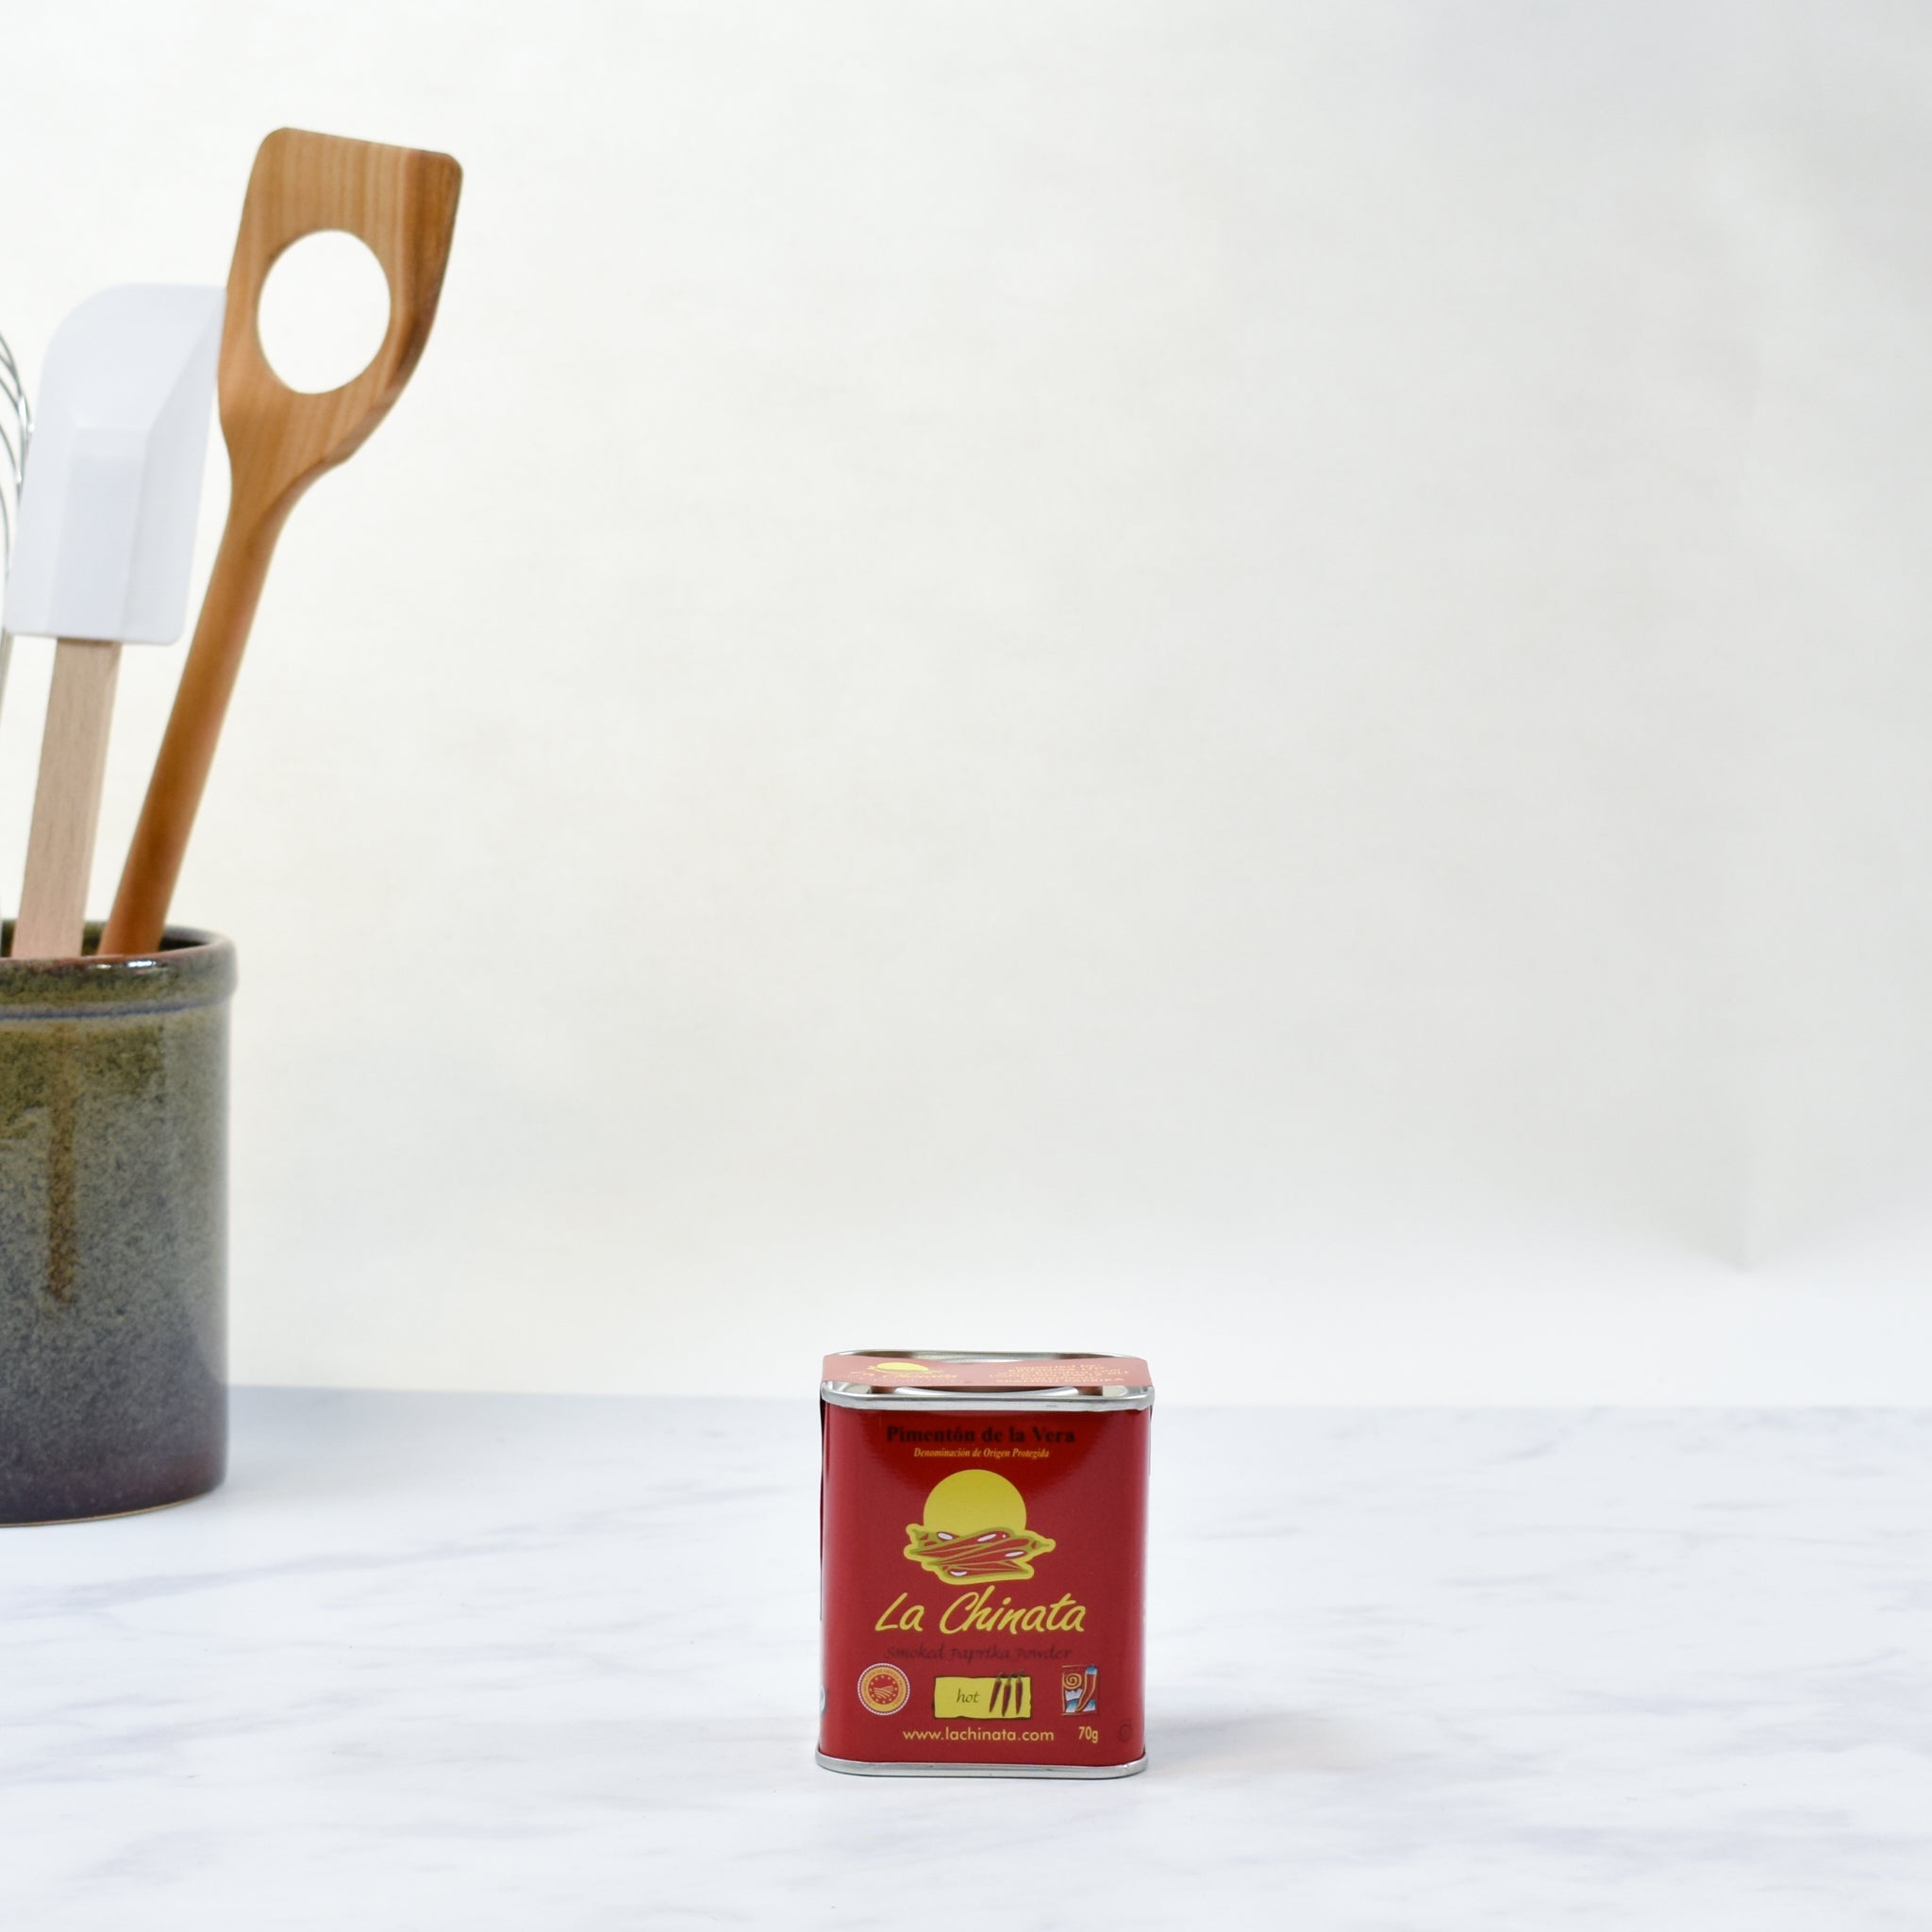 La Chinata Hot Smoked Paprika 70g Ingredients Seasonings Spanish Food Lifestyle Packaging Shot